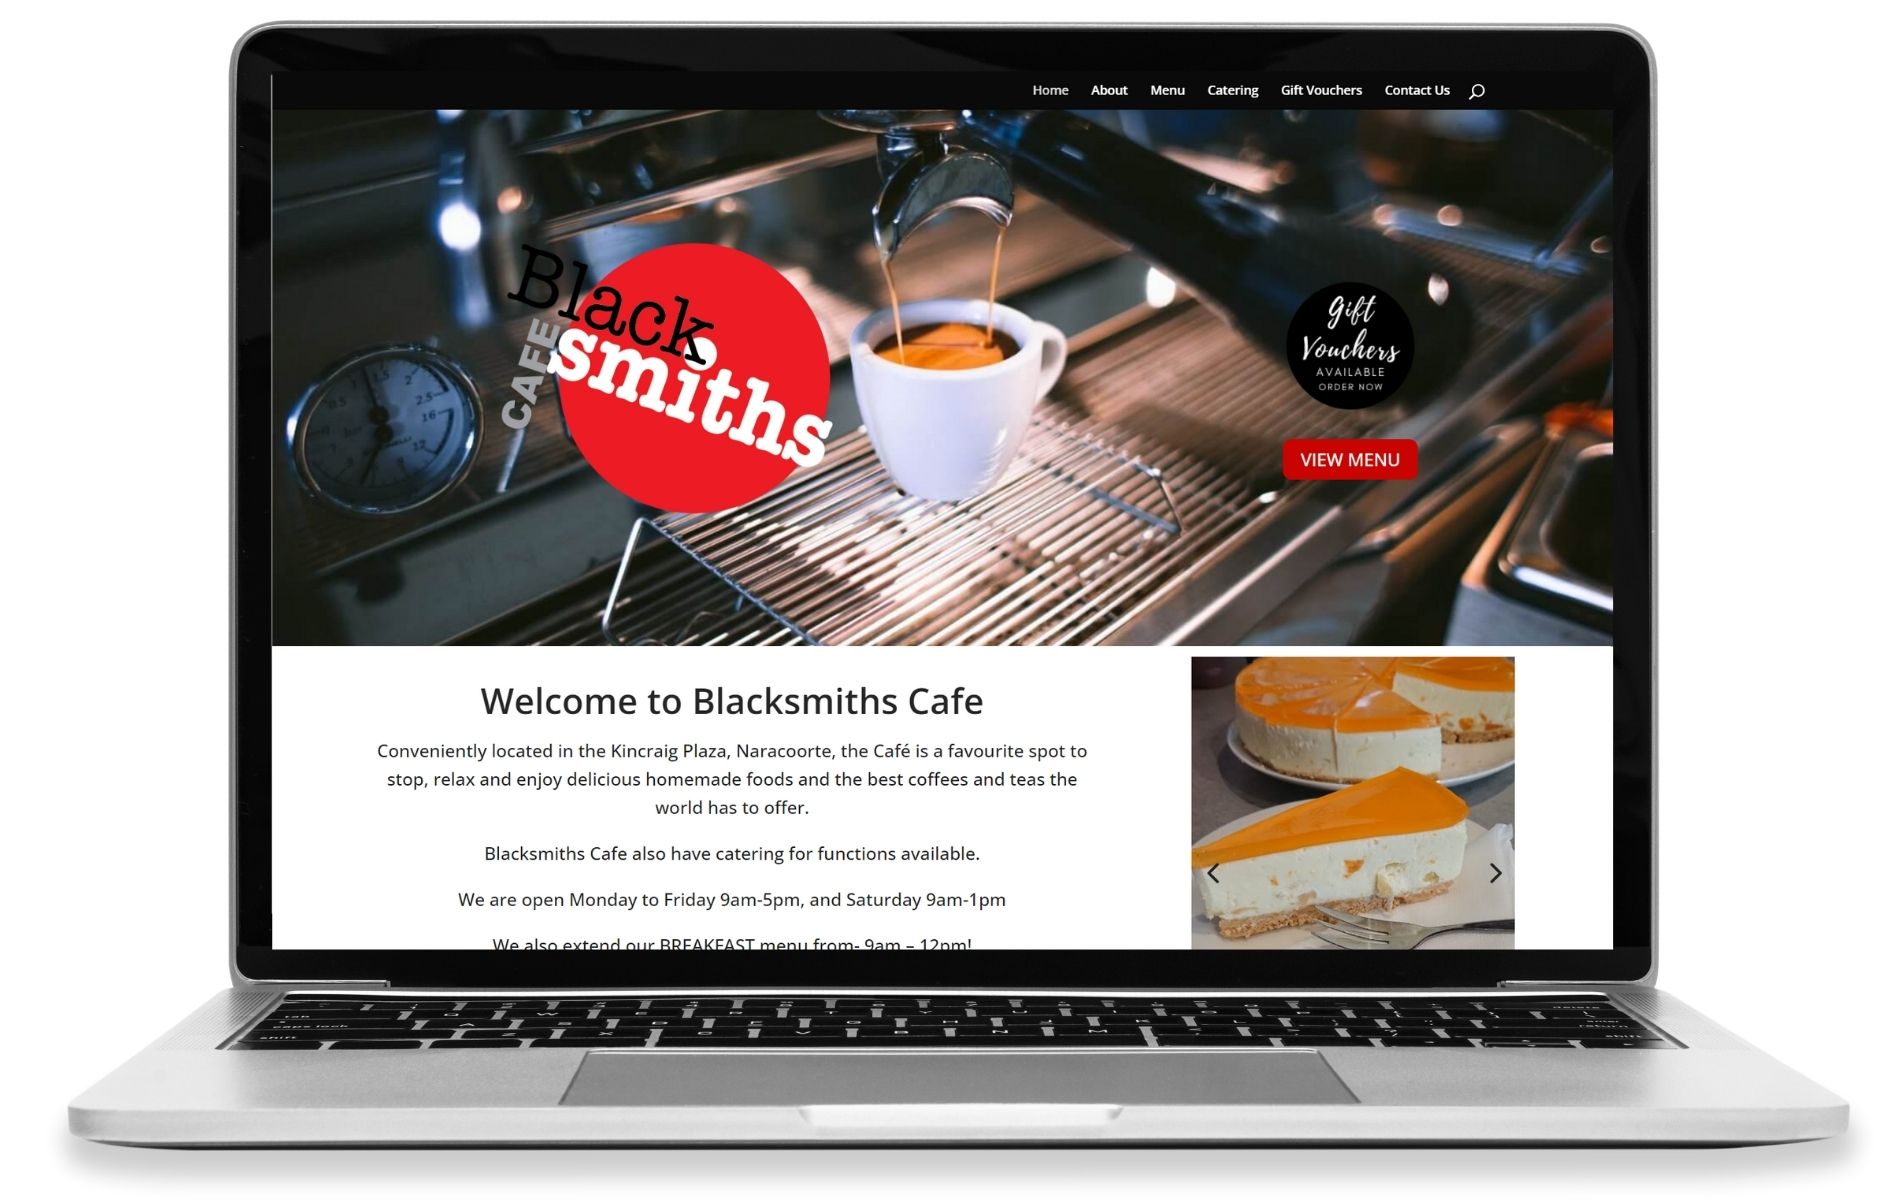 Blacksmiths-Gusto-Marketing